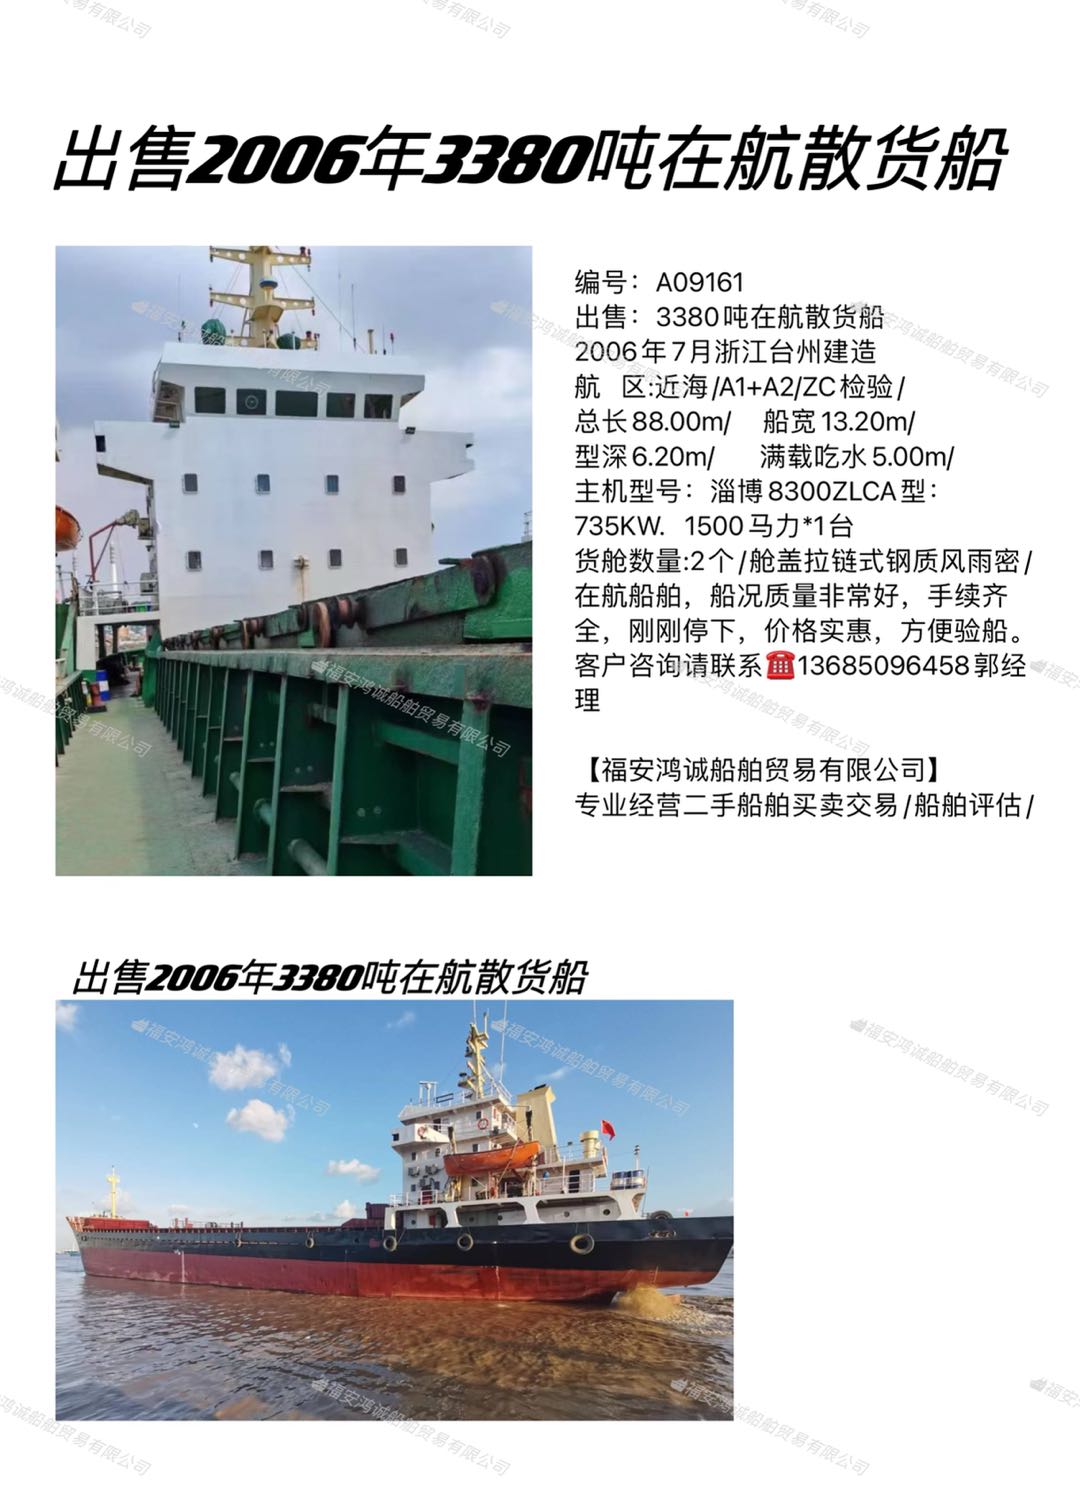 出卖2006年3380吨正在航集货船 祸建 宁德市-2.jpg